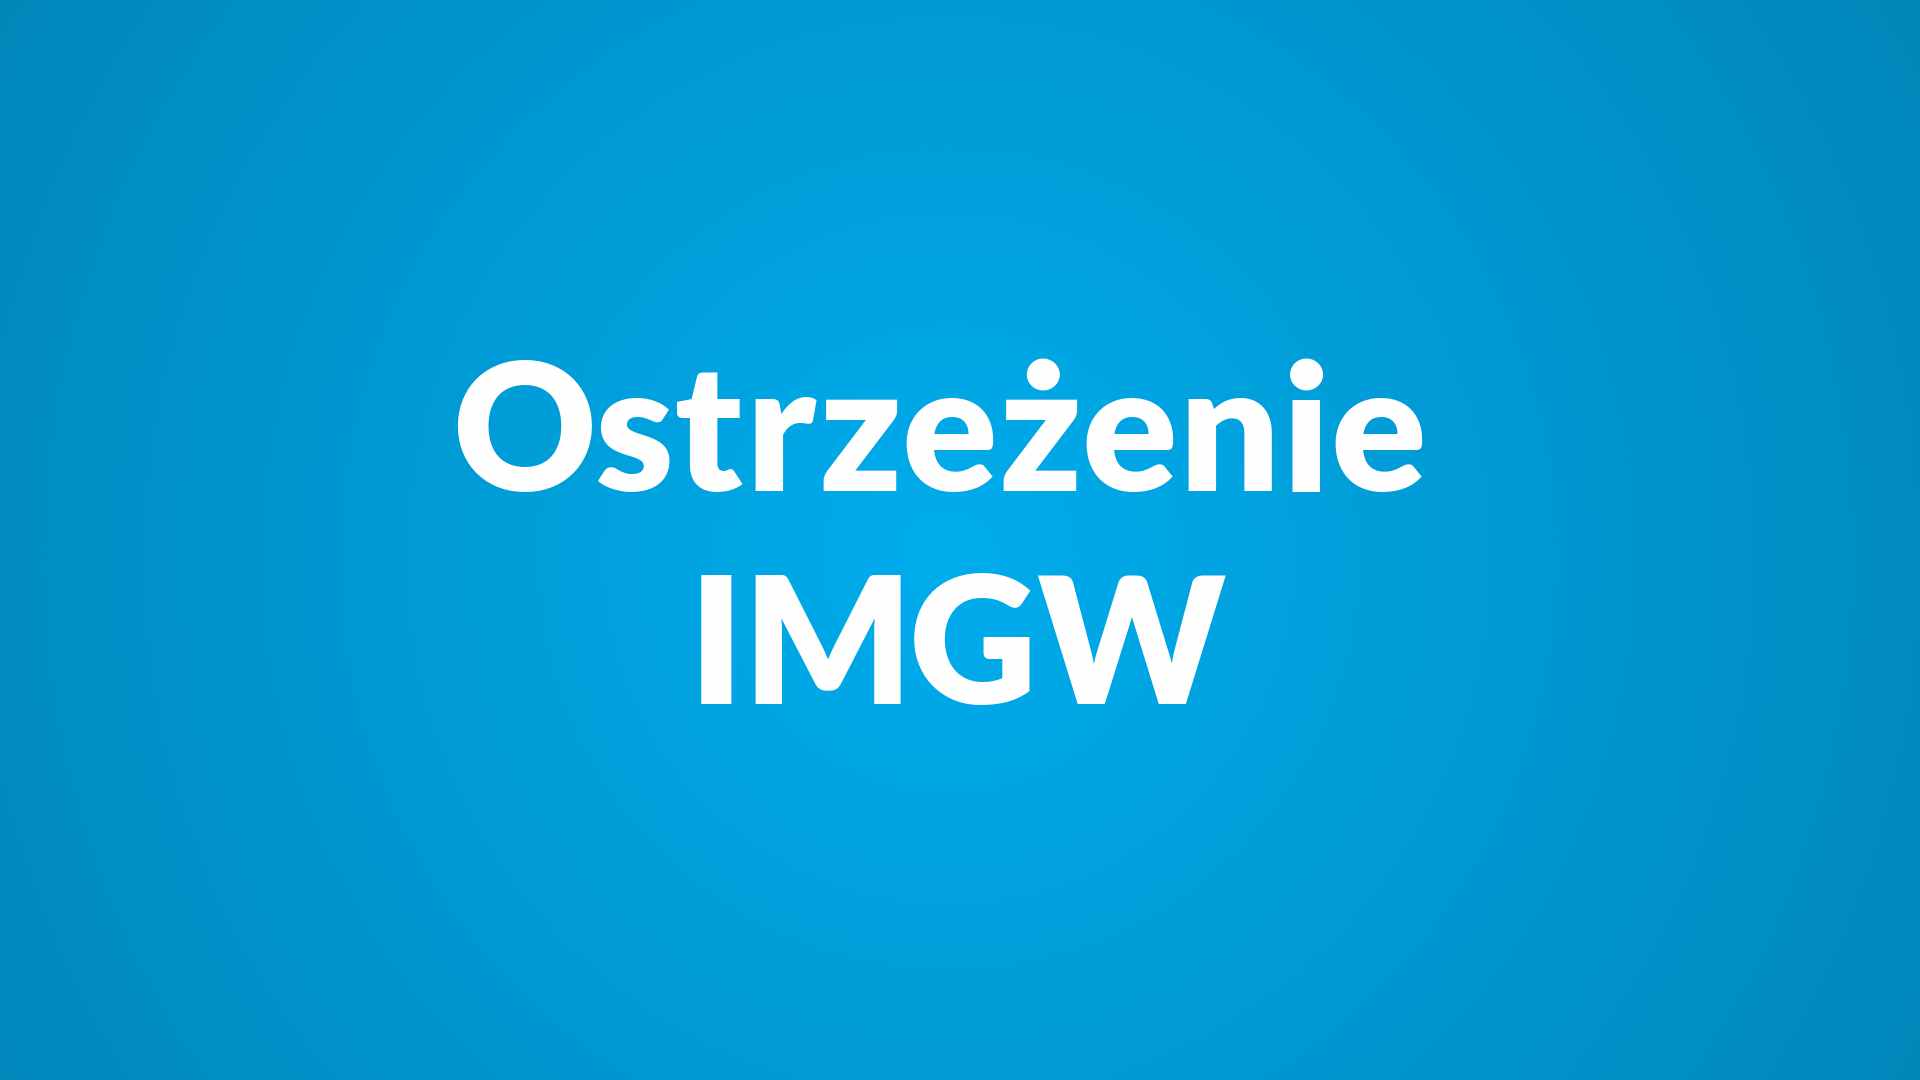 Ostrzeżenie IMGW dla Powiatu Żywieckiego